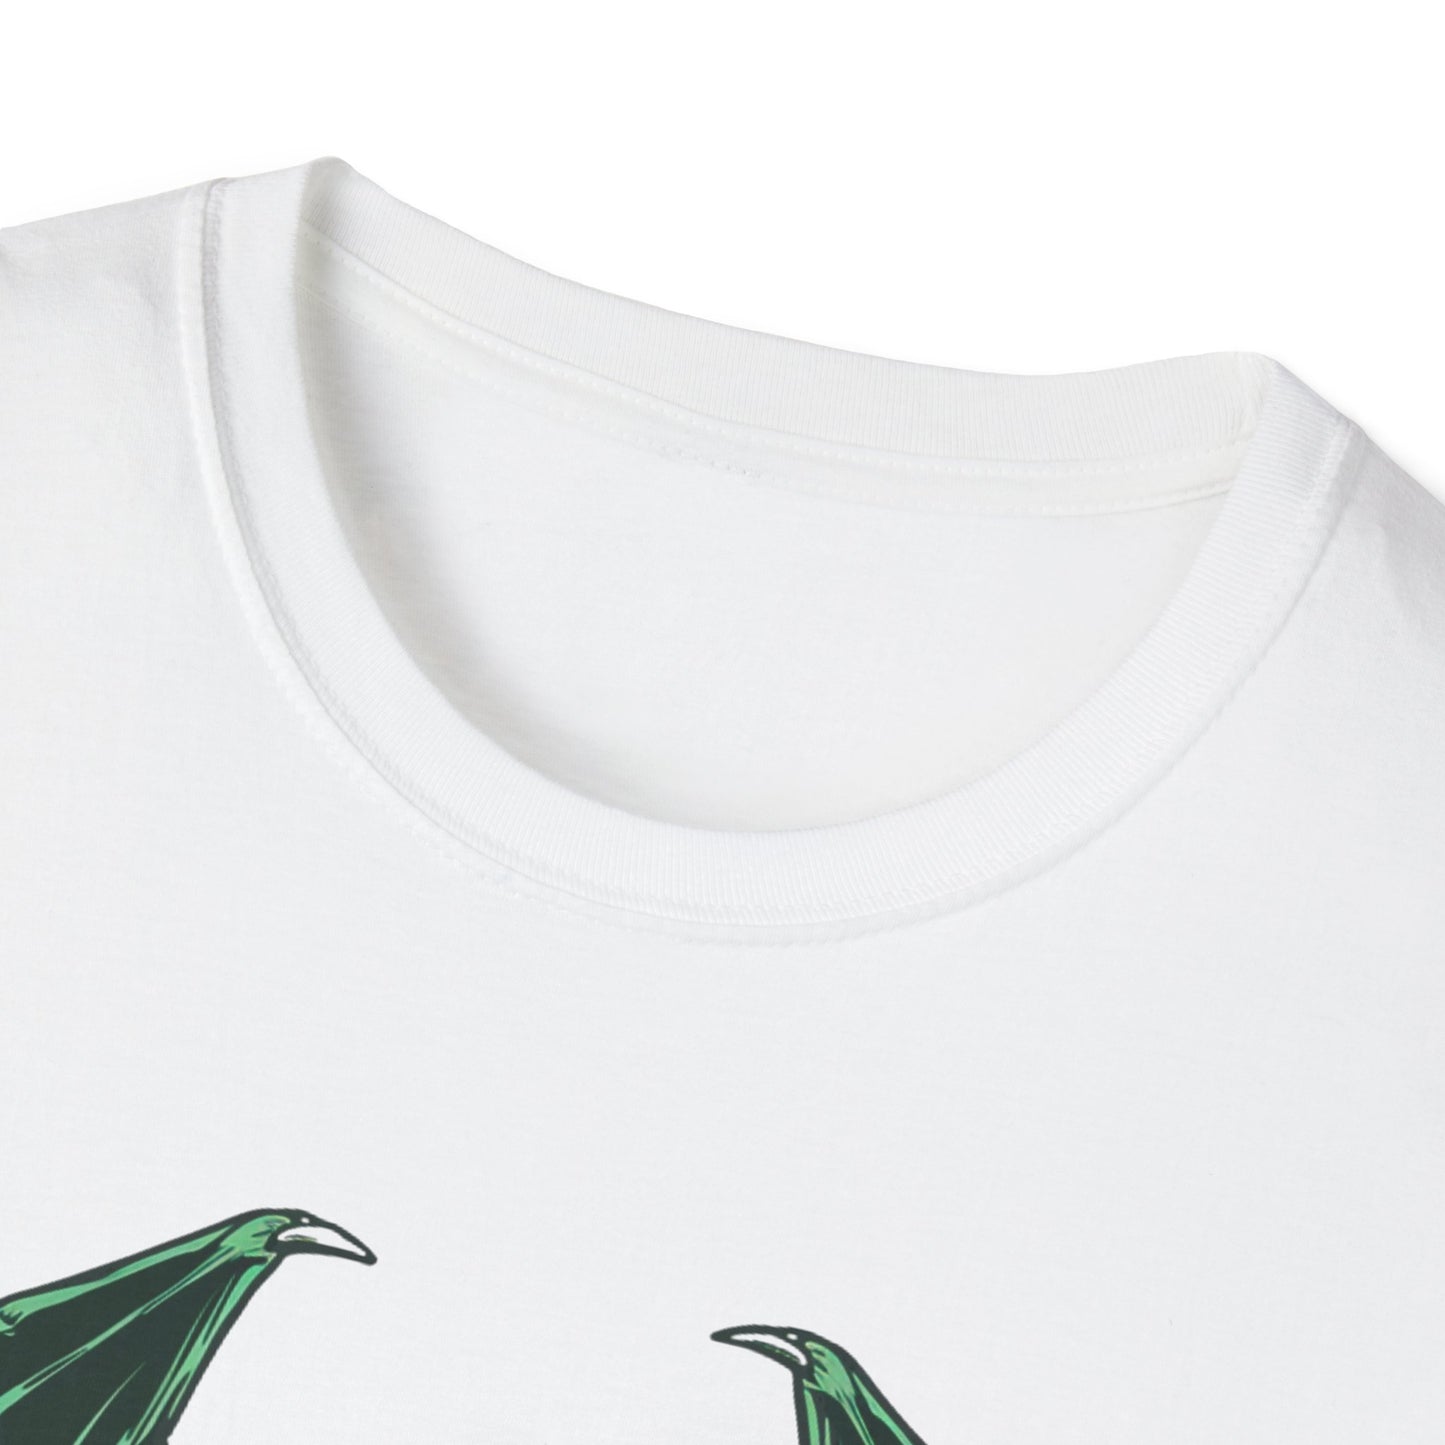 Cthulhu - Unisex Softstyle T-Shirt